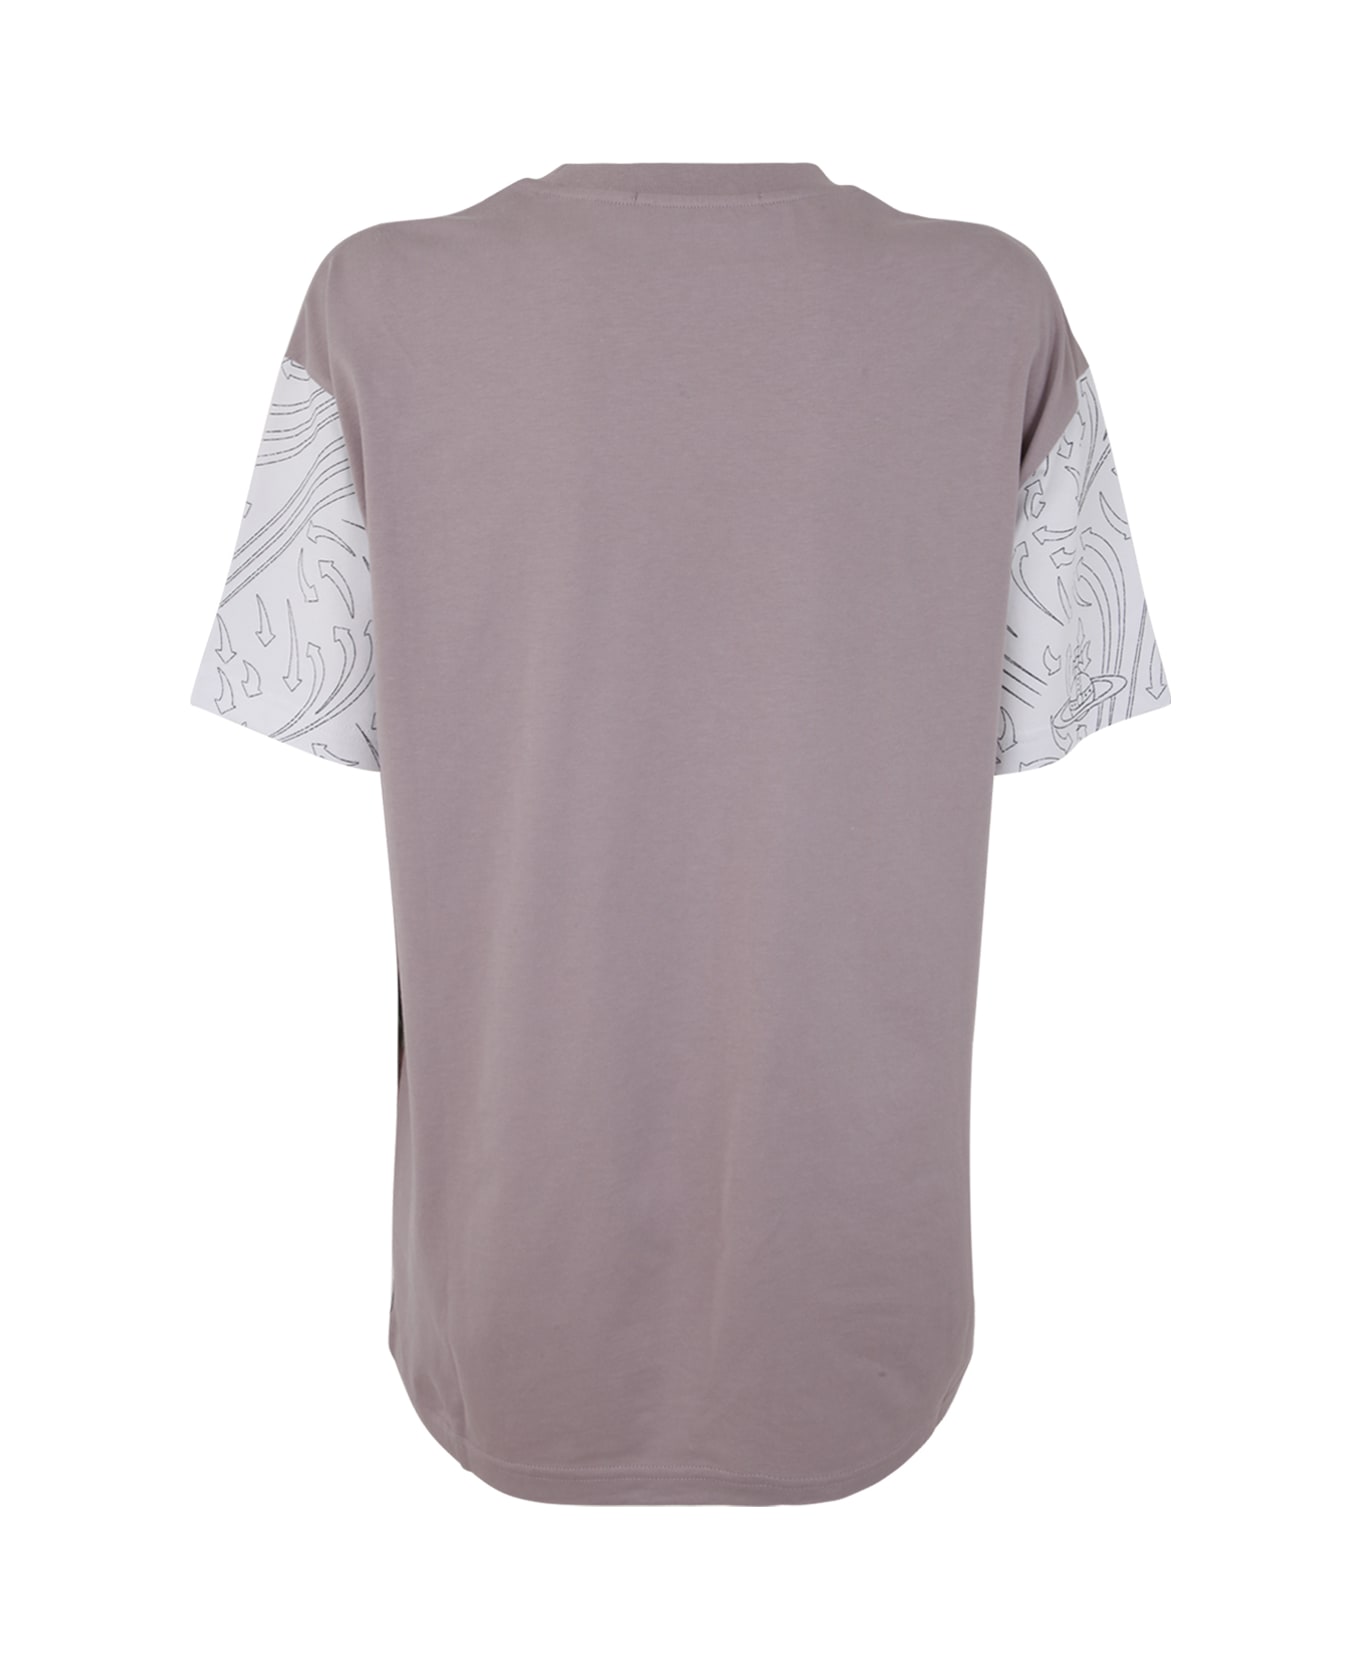 Vivienne Westwood Classic T-shirt - Boucher Tシャツ